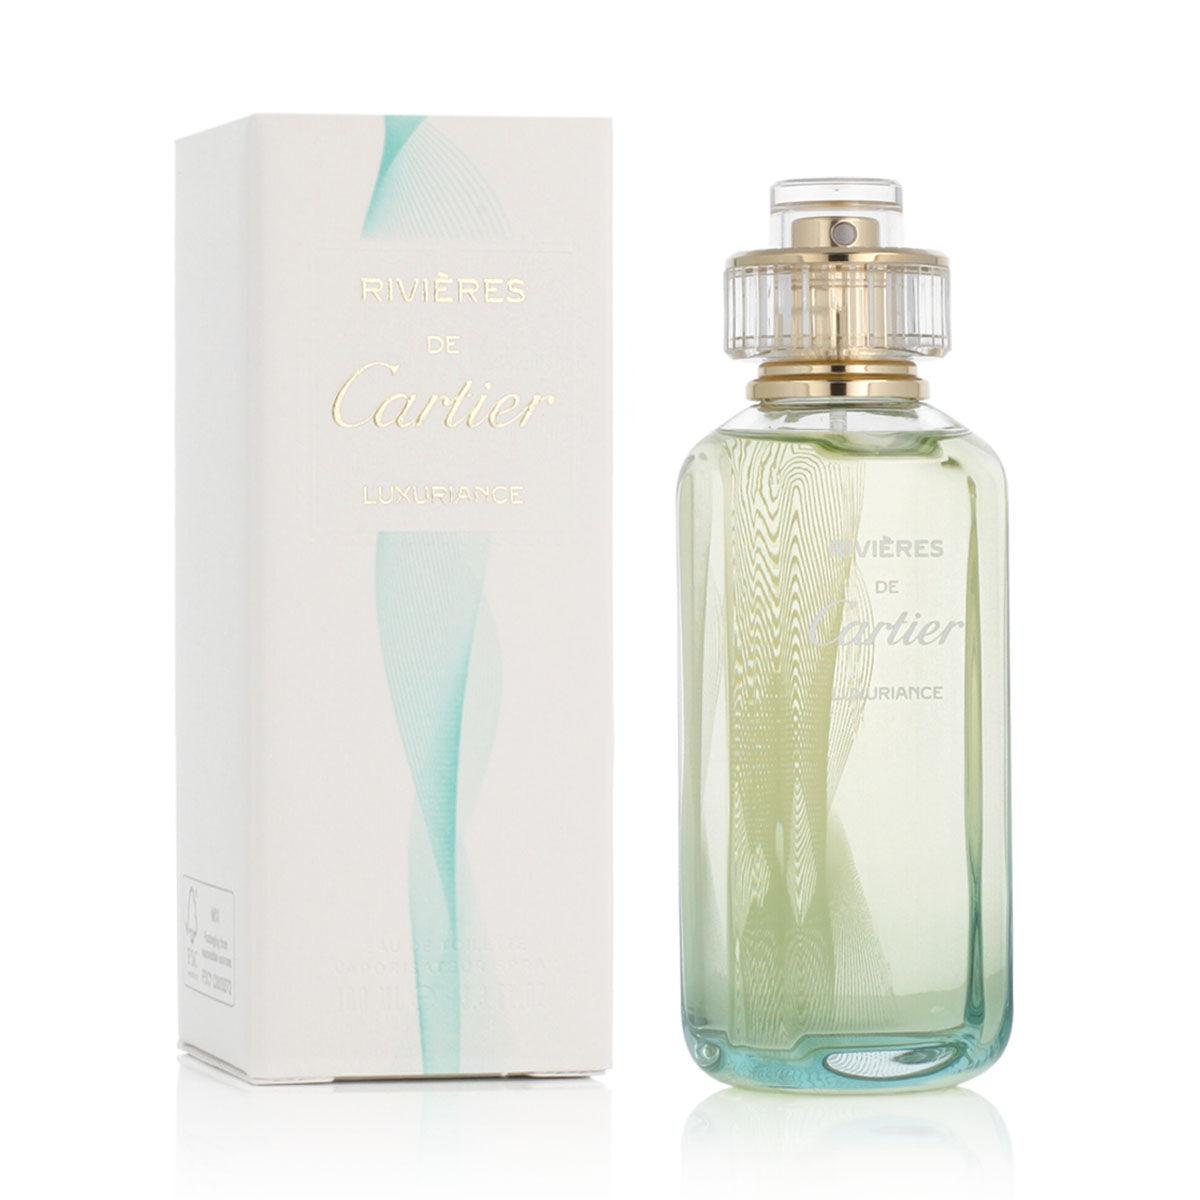 Unisex parfume Cartier EDT Rivières de Cartier Luxuriance 100 ml